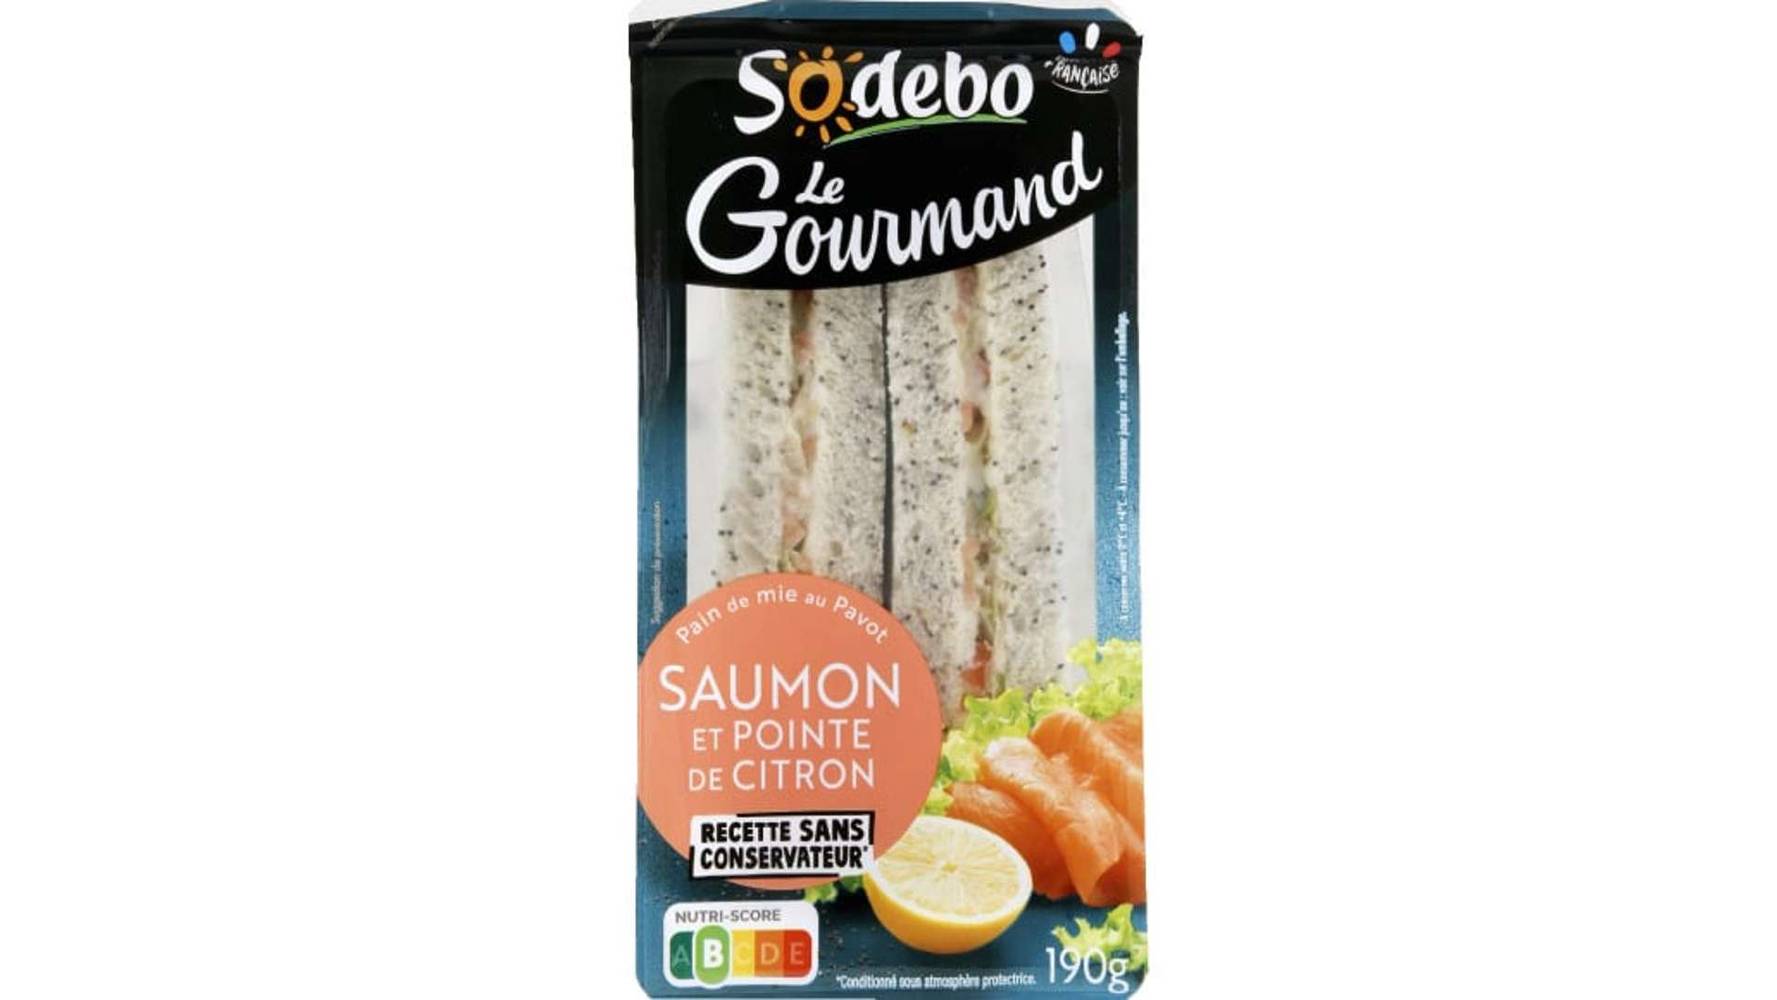 Sodebo Sandwich le gourmand club pavot saumon pointe de citron La barquette de 190g